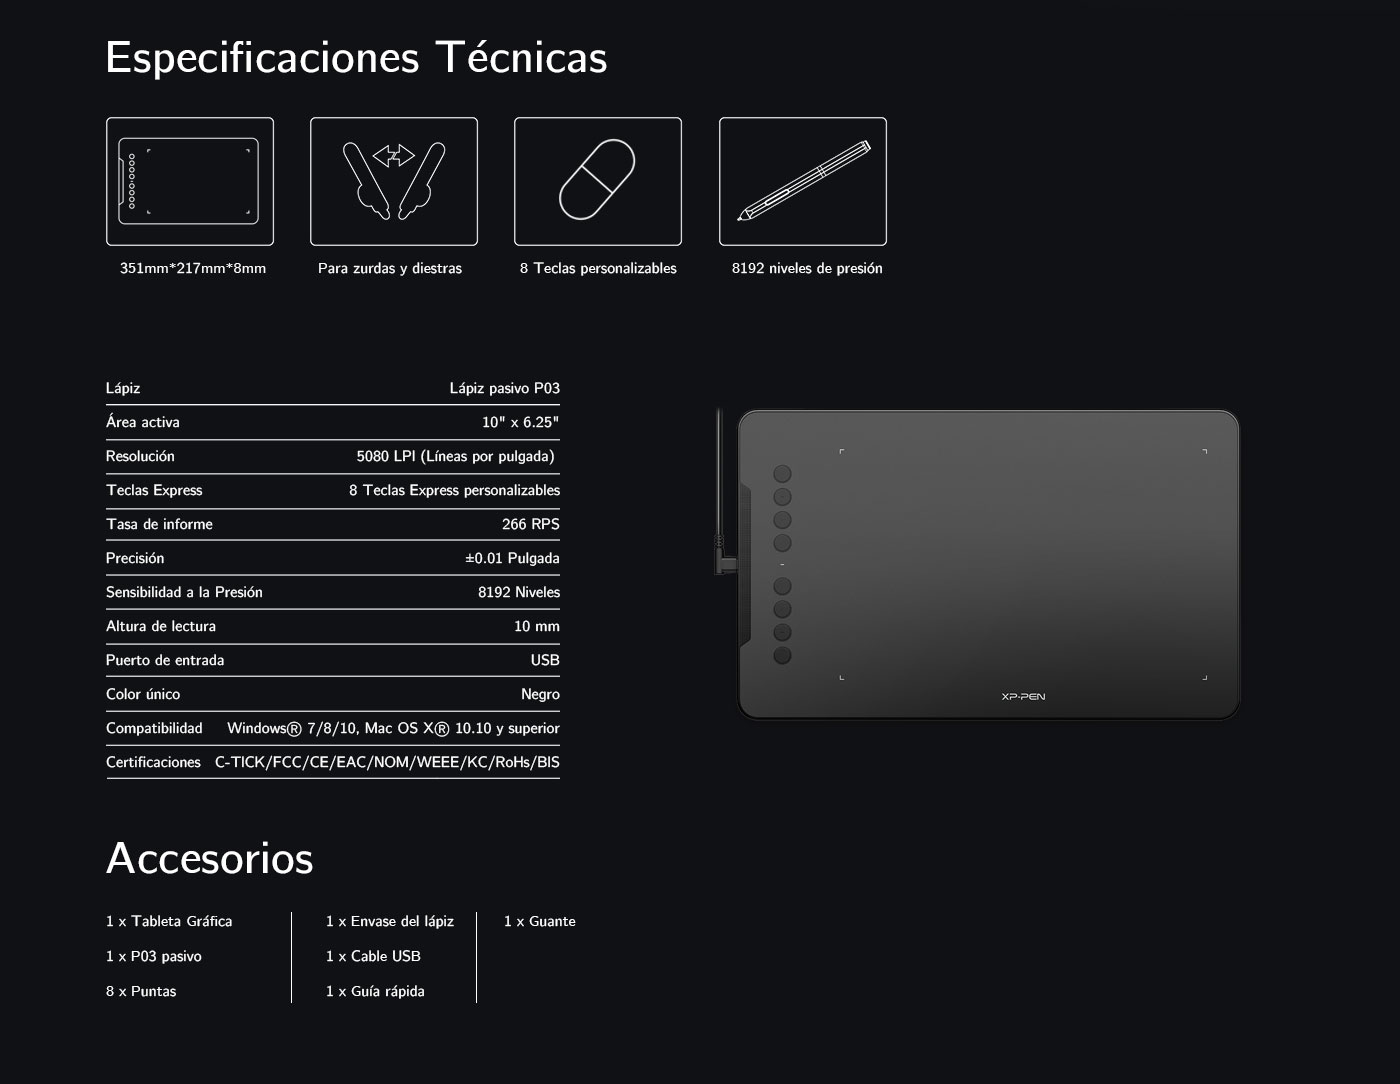 Especificaciones y Accesorios de Tableta gráfica XP-Pen Deco 01